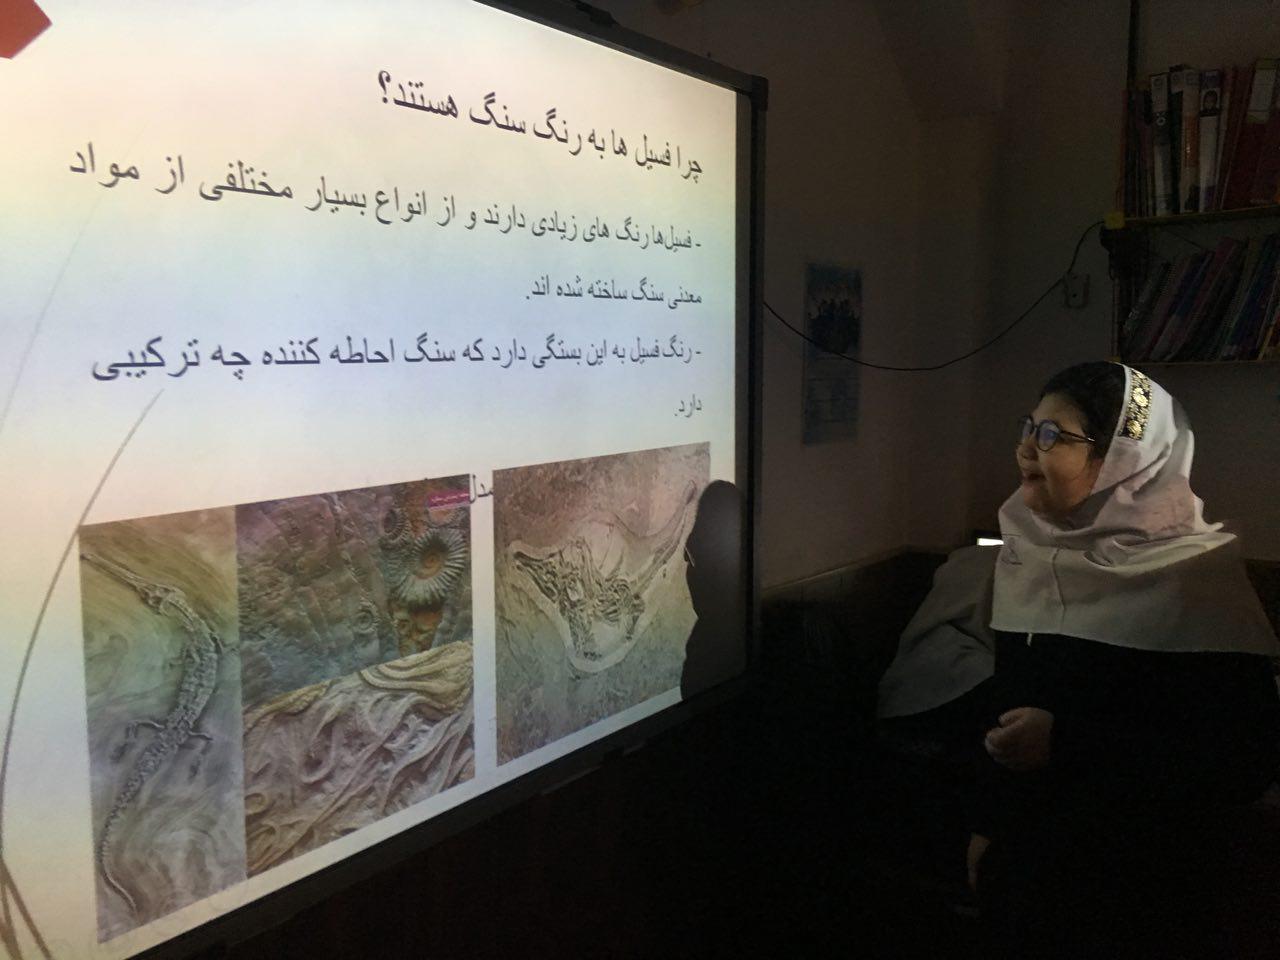 کنفرانس ترنم رحمانی، دانش آموز فعال کلاس سوم در مورد فسیل